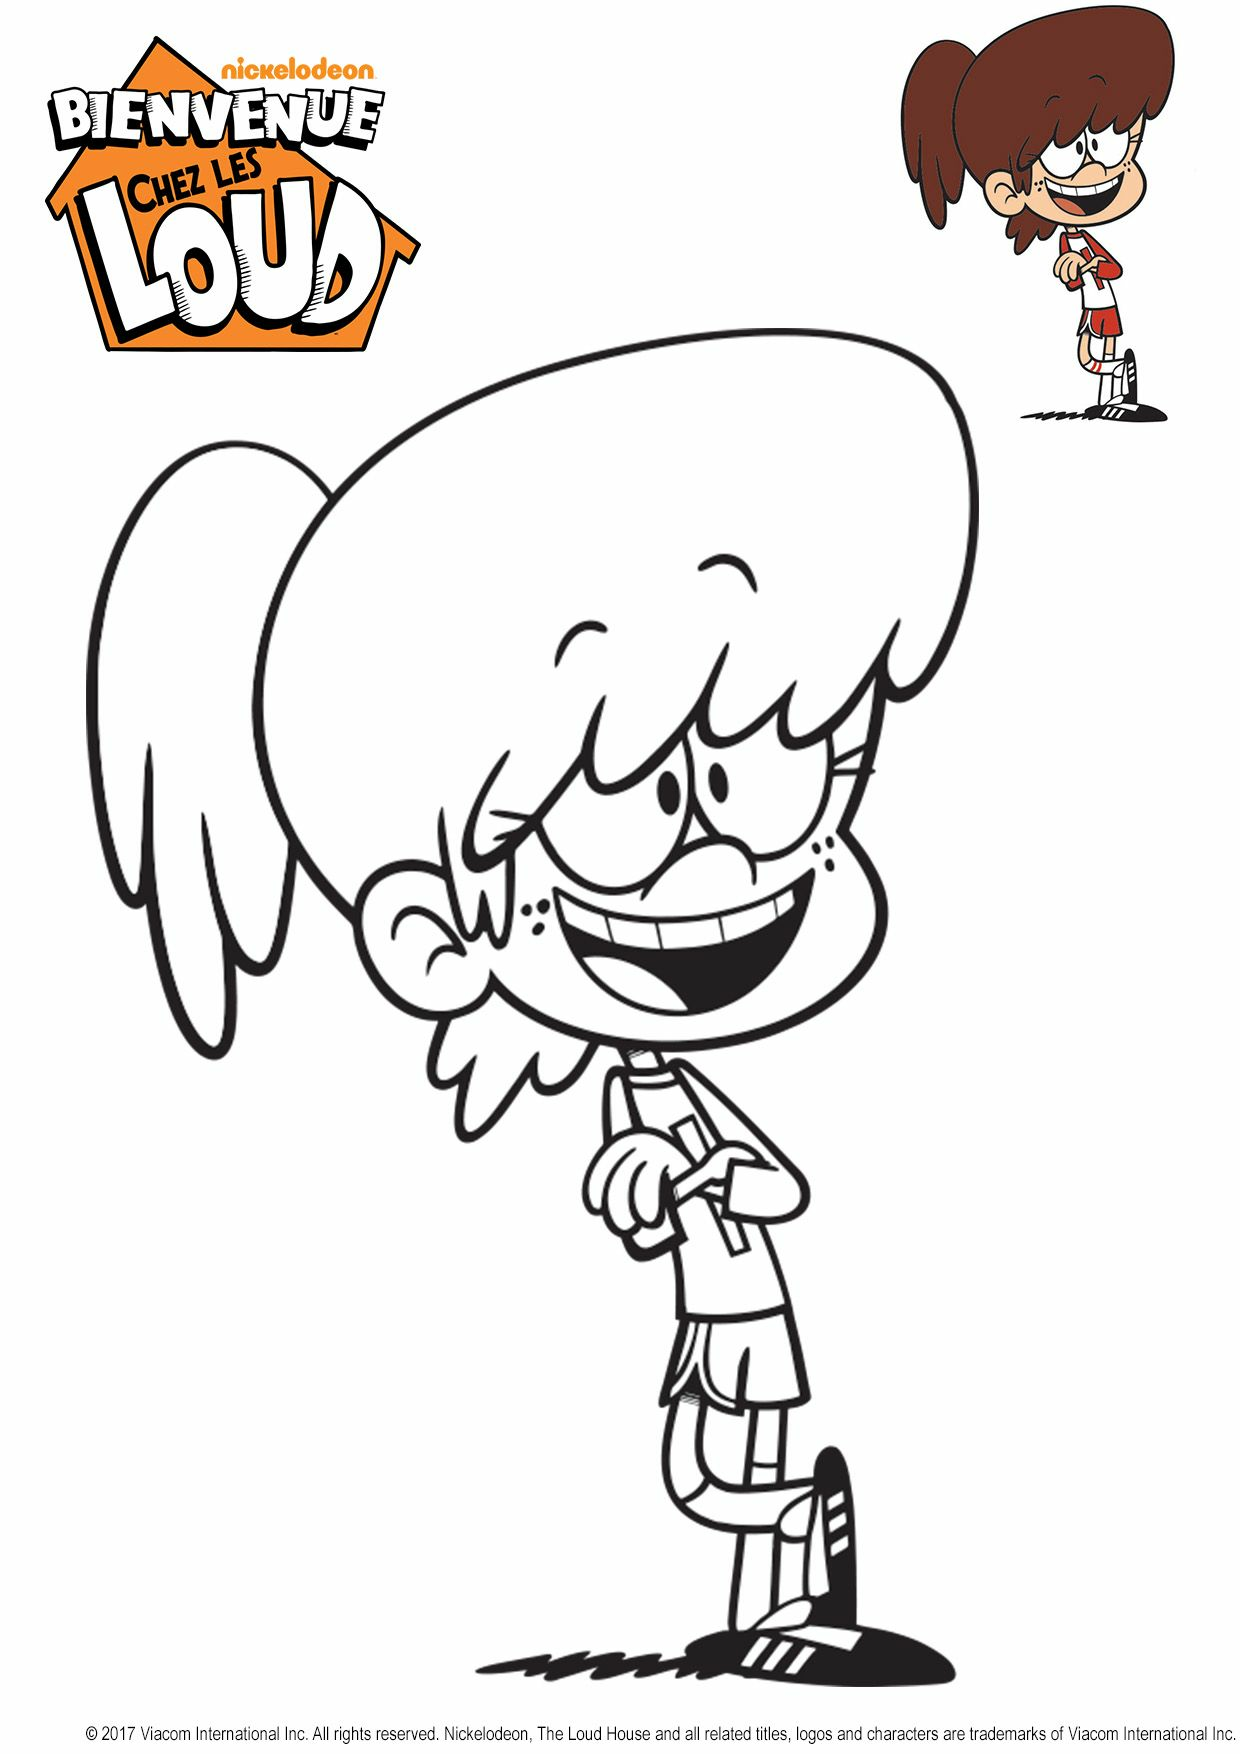   Gulli Lynn de Bienvenue chez les Loud, une fille de dessin animé 